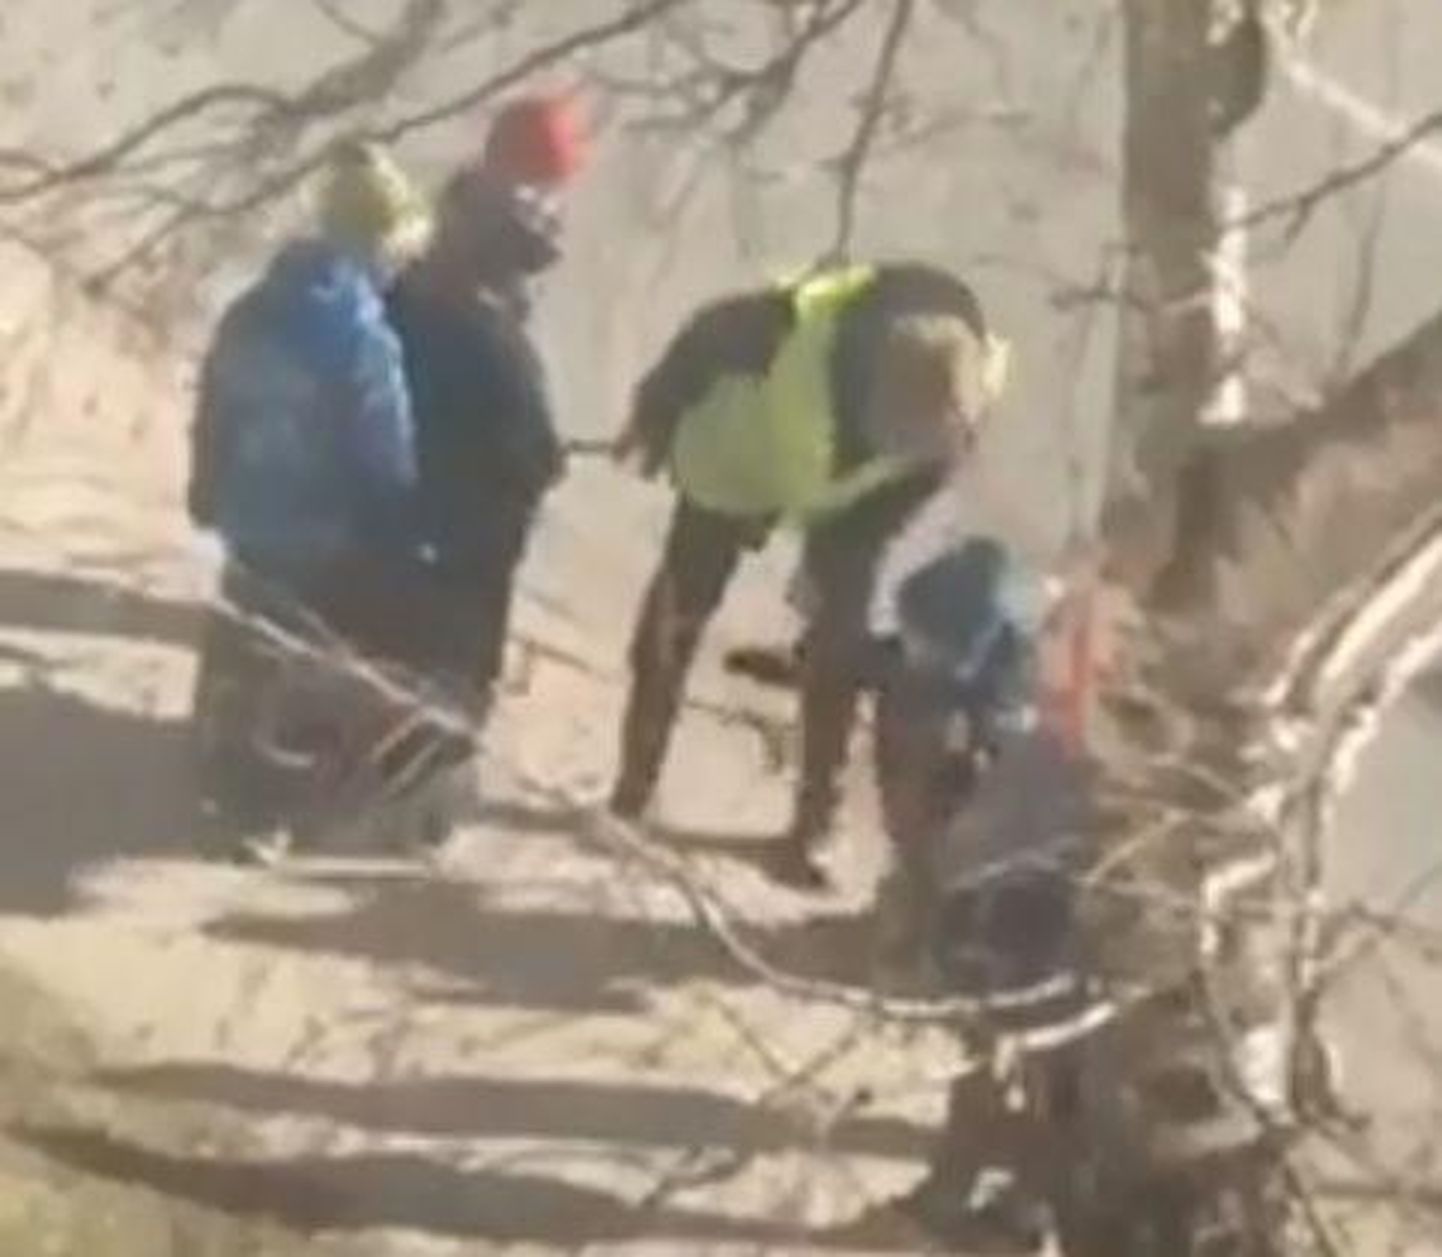 Facebooki grupis Märgatud24 Pärnus avaldati video, milles on näha, kuidas ranna rajoonis lastega jalutav täiskasvanu sakutab üht mudilastest nii jõuliselt, et laps hooga pikali kukub.